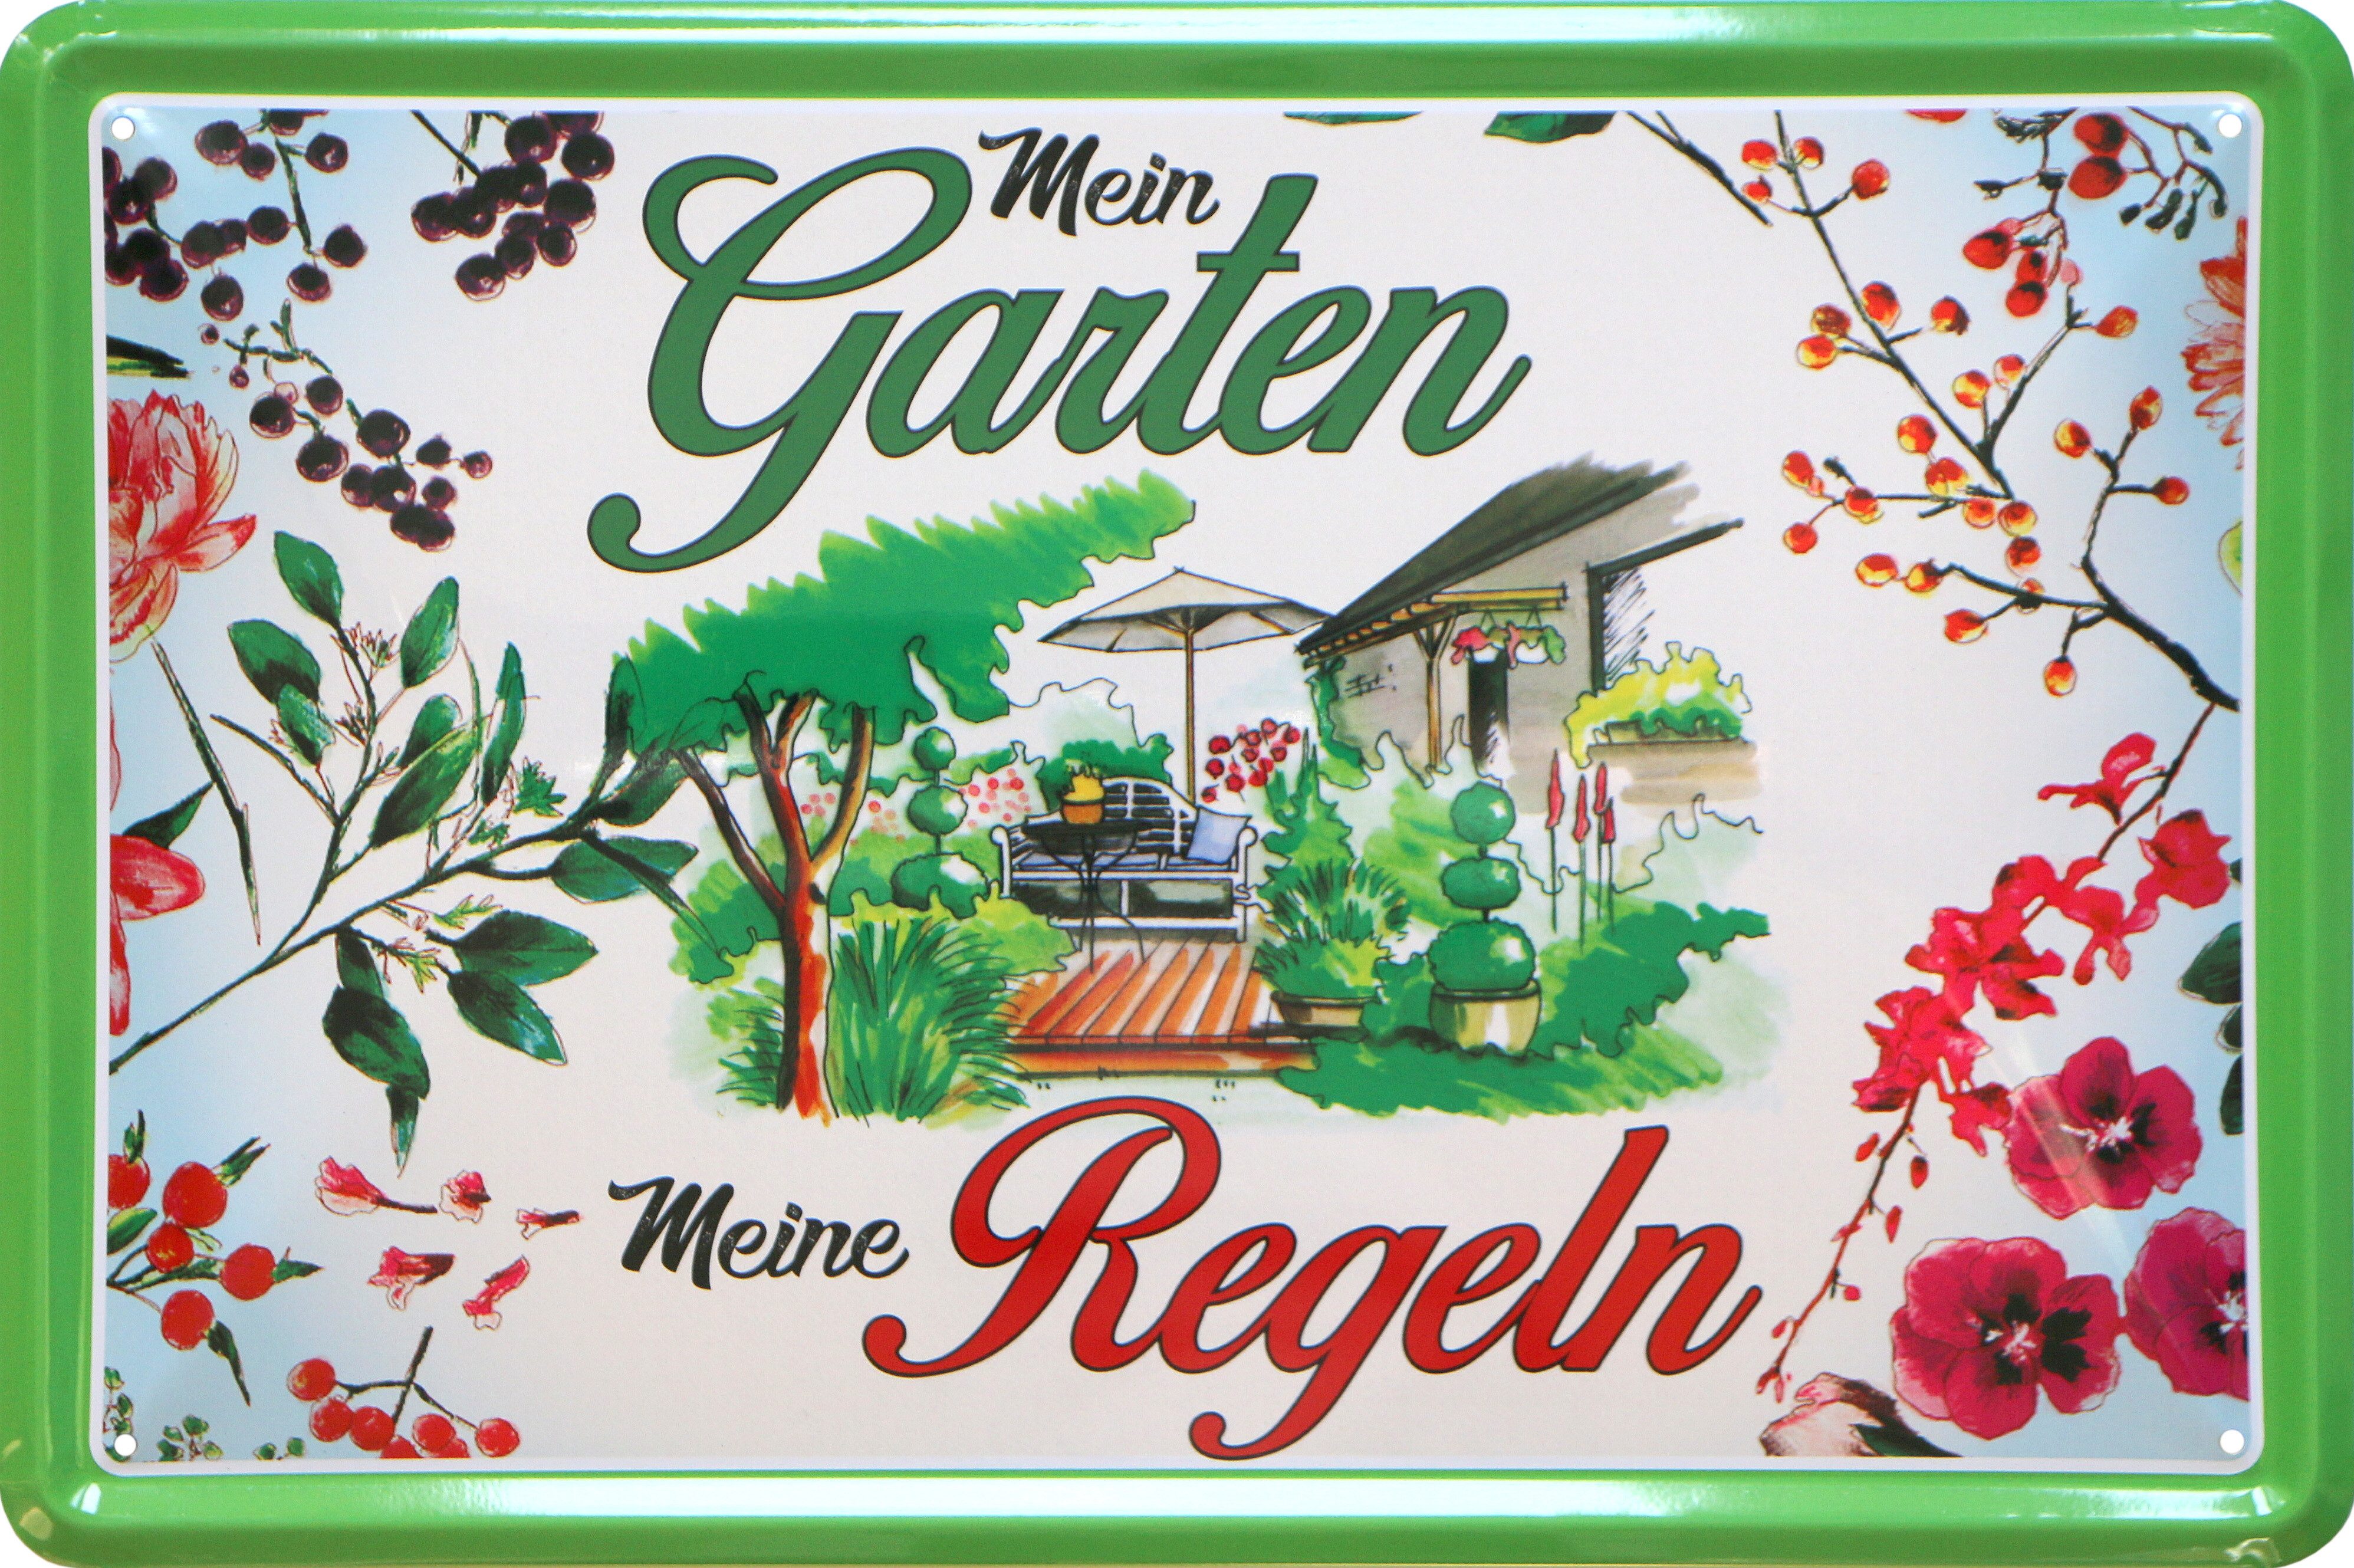 WOGEKA ART Metallbild Mein Garten - Meine Regeln - 20 x 30 cm Retro Blechschild Zuhause, Metallschild Wanddeko Spruch Schild Wandbild Gärtner Blumen